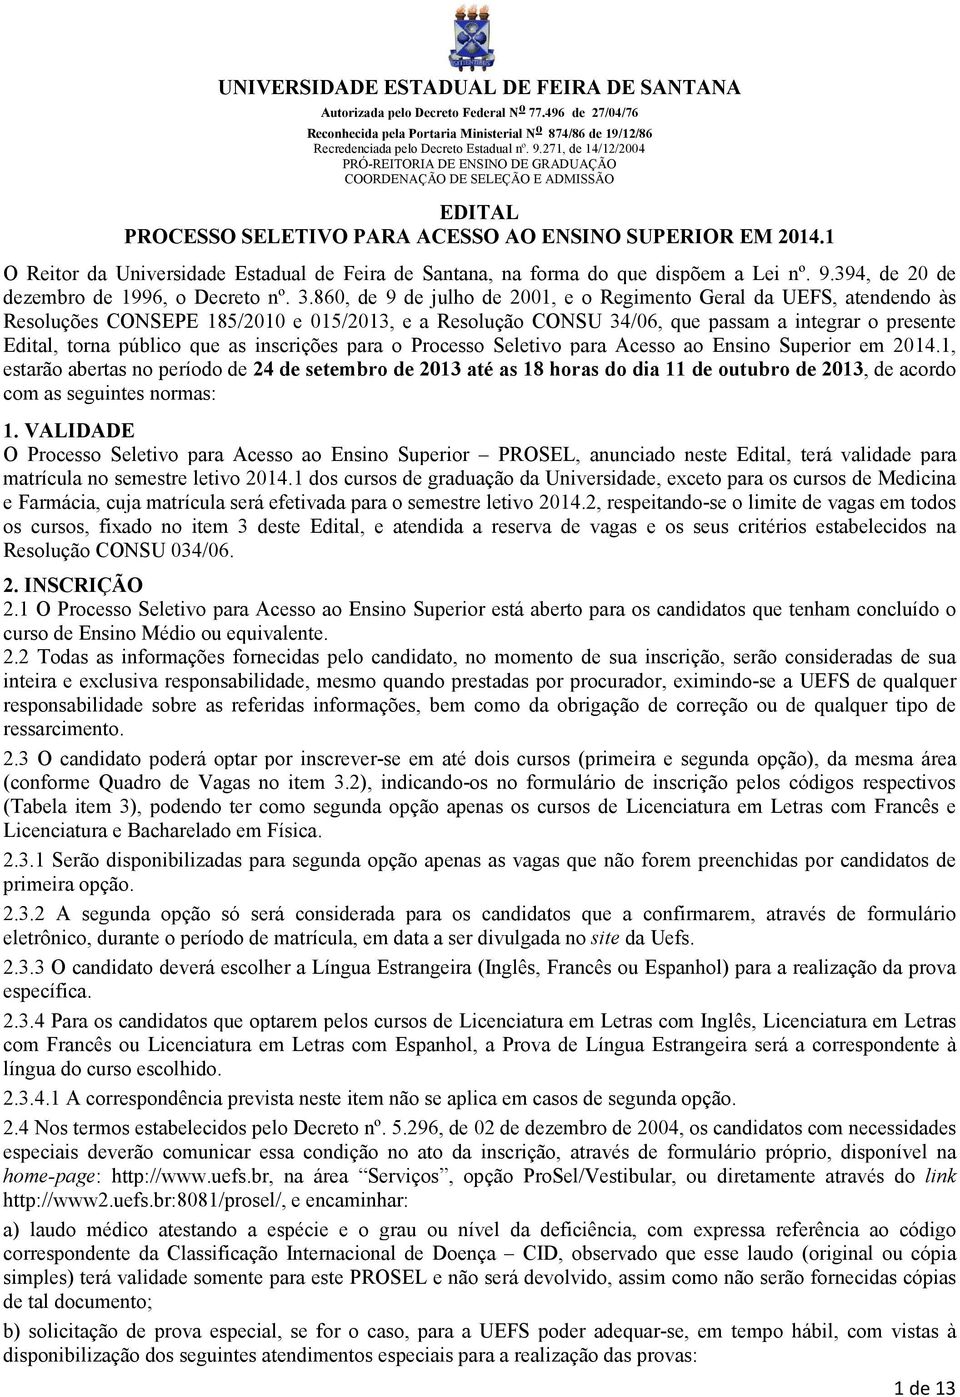 1 O Reitor da Universidade Estadual de Feira de Santana, na forma do que dispõem a Lei nº. 9.394, de 20 de dezembro de 1996, o Decreto nº. 3.